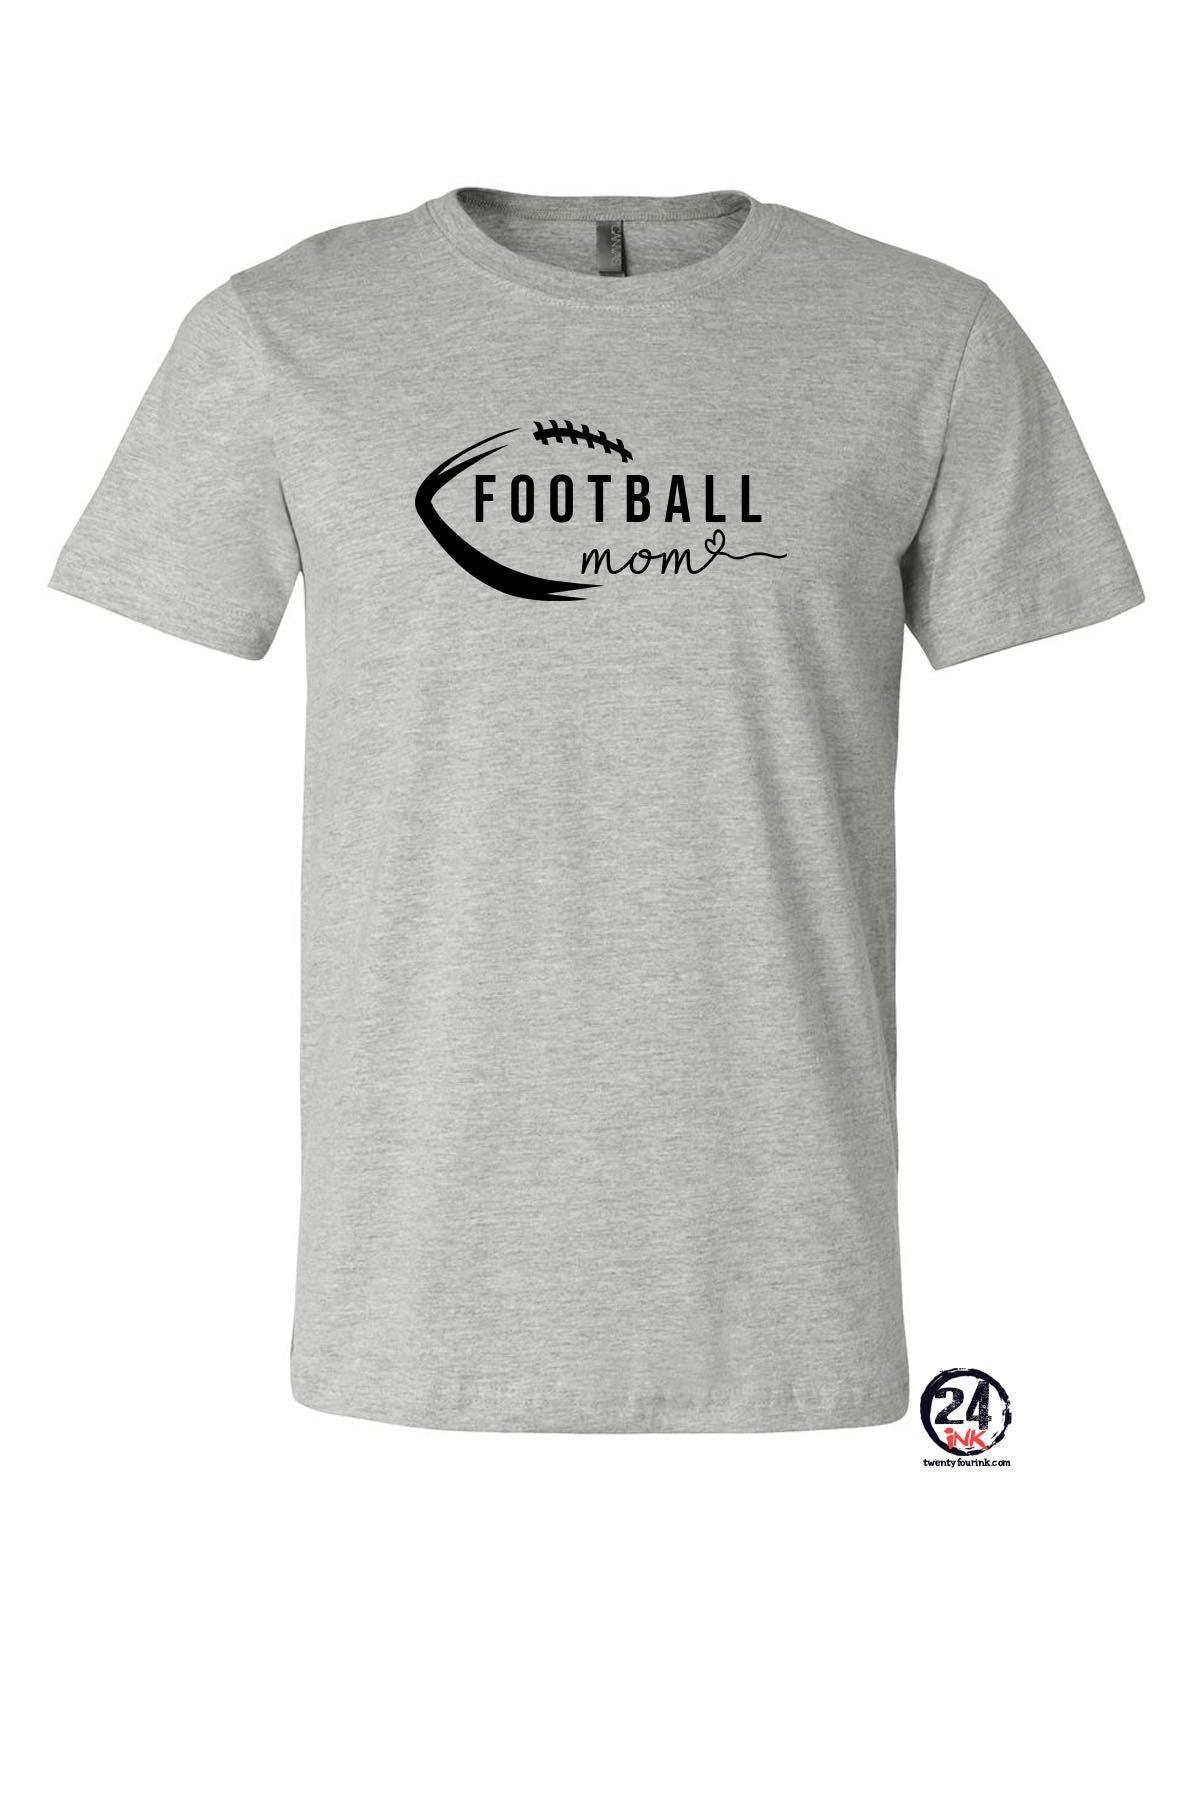 High Point Football design 5 T-Shirt